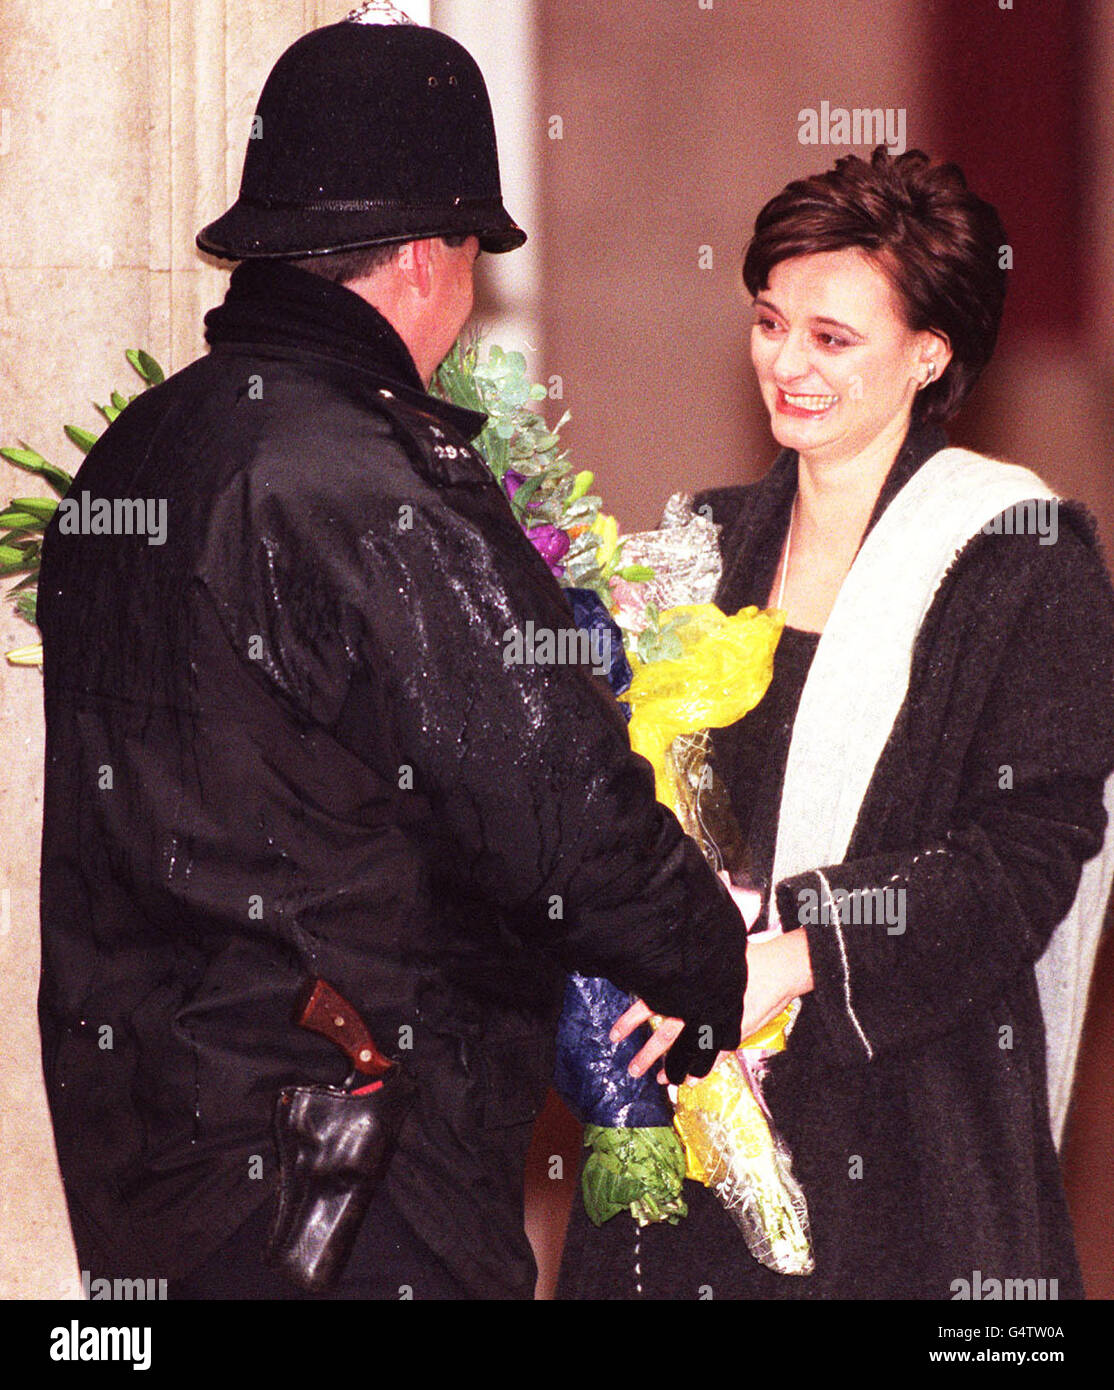 L'épouse du Premier ministre Tony Blair, Cherie, reçoit des fleurs ...